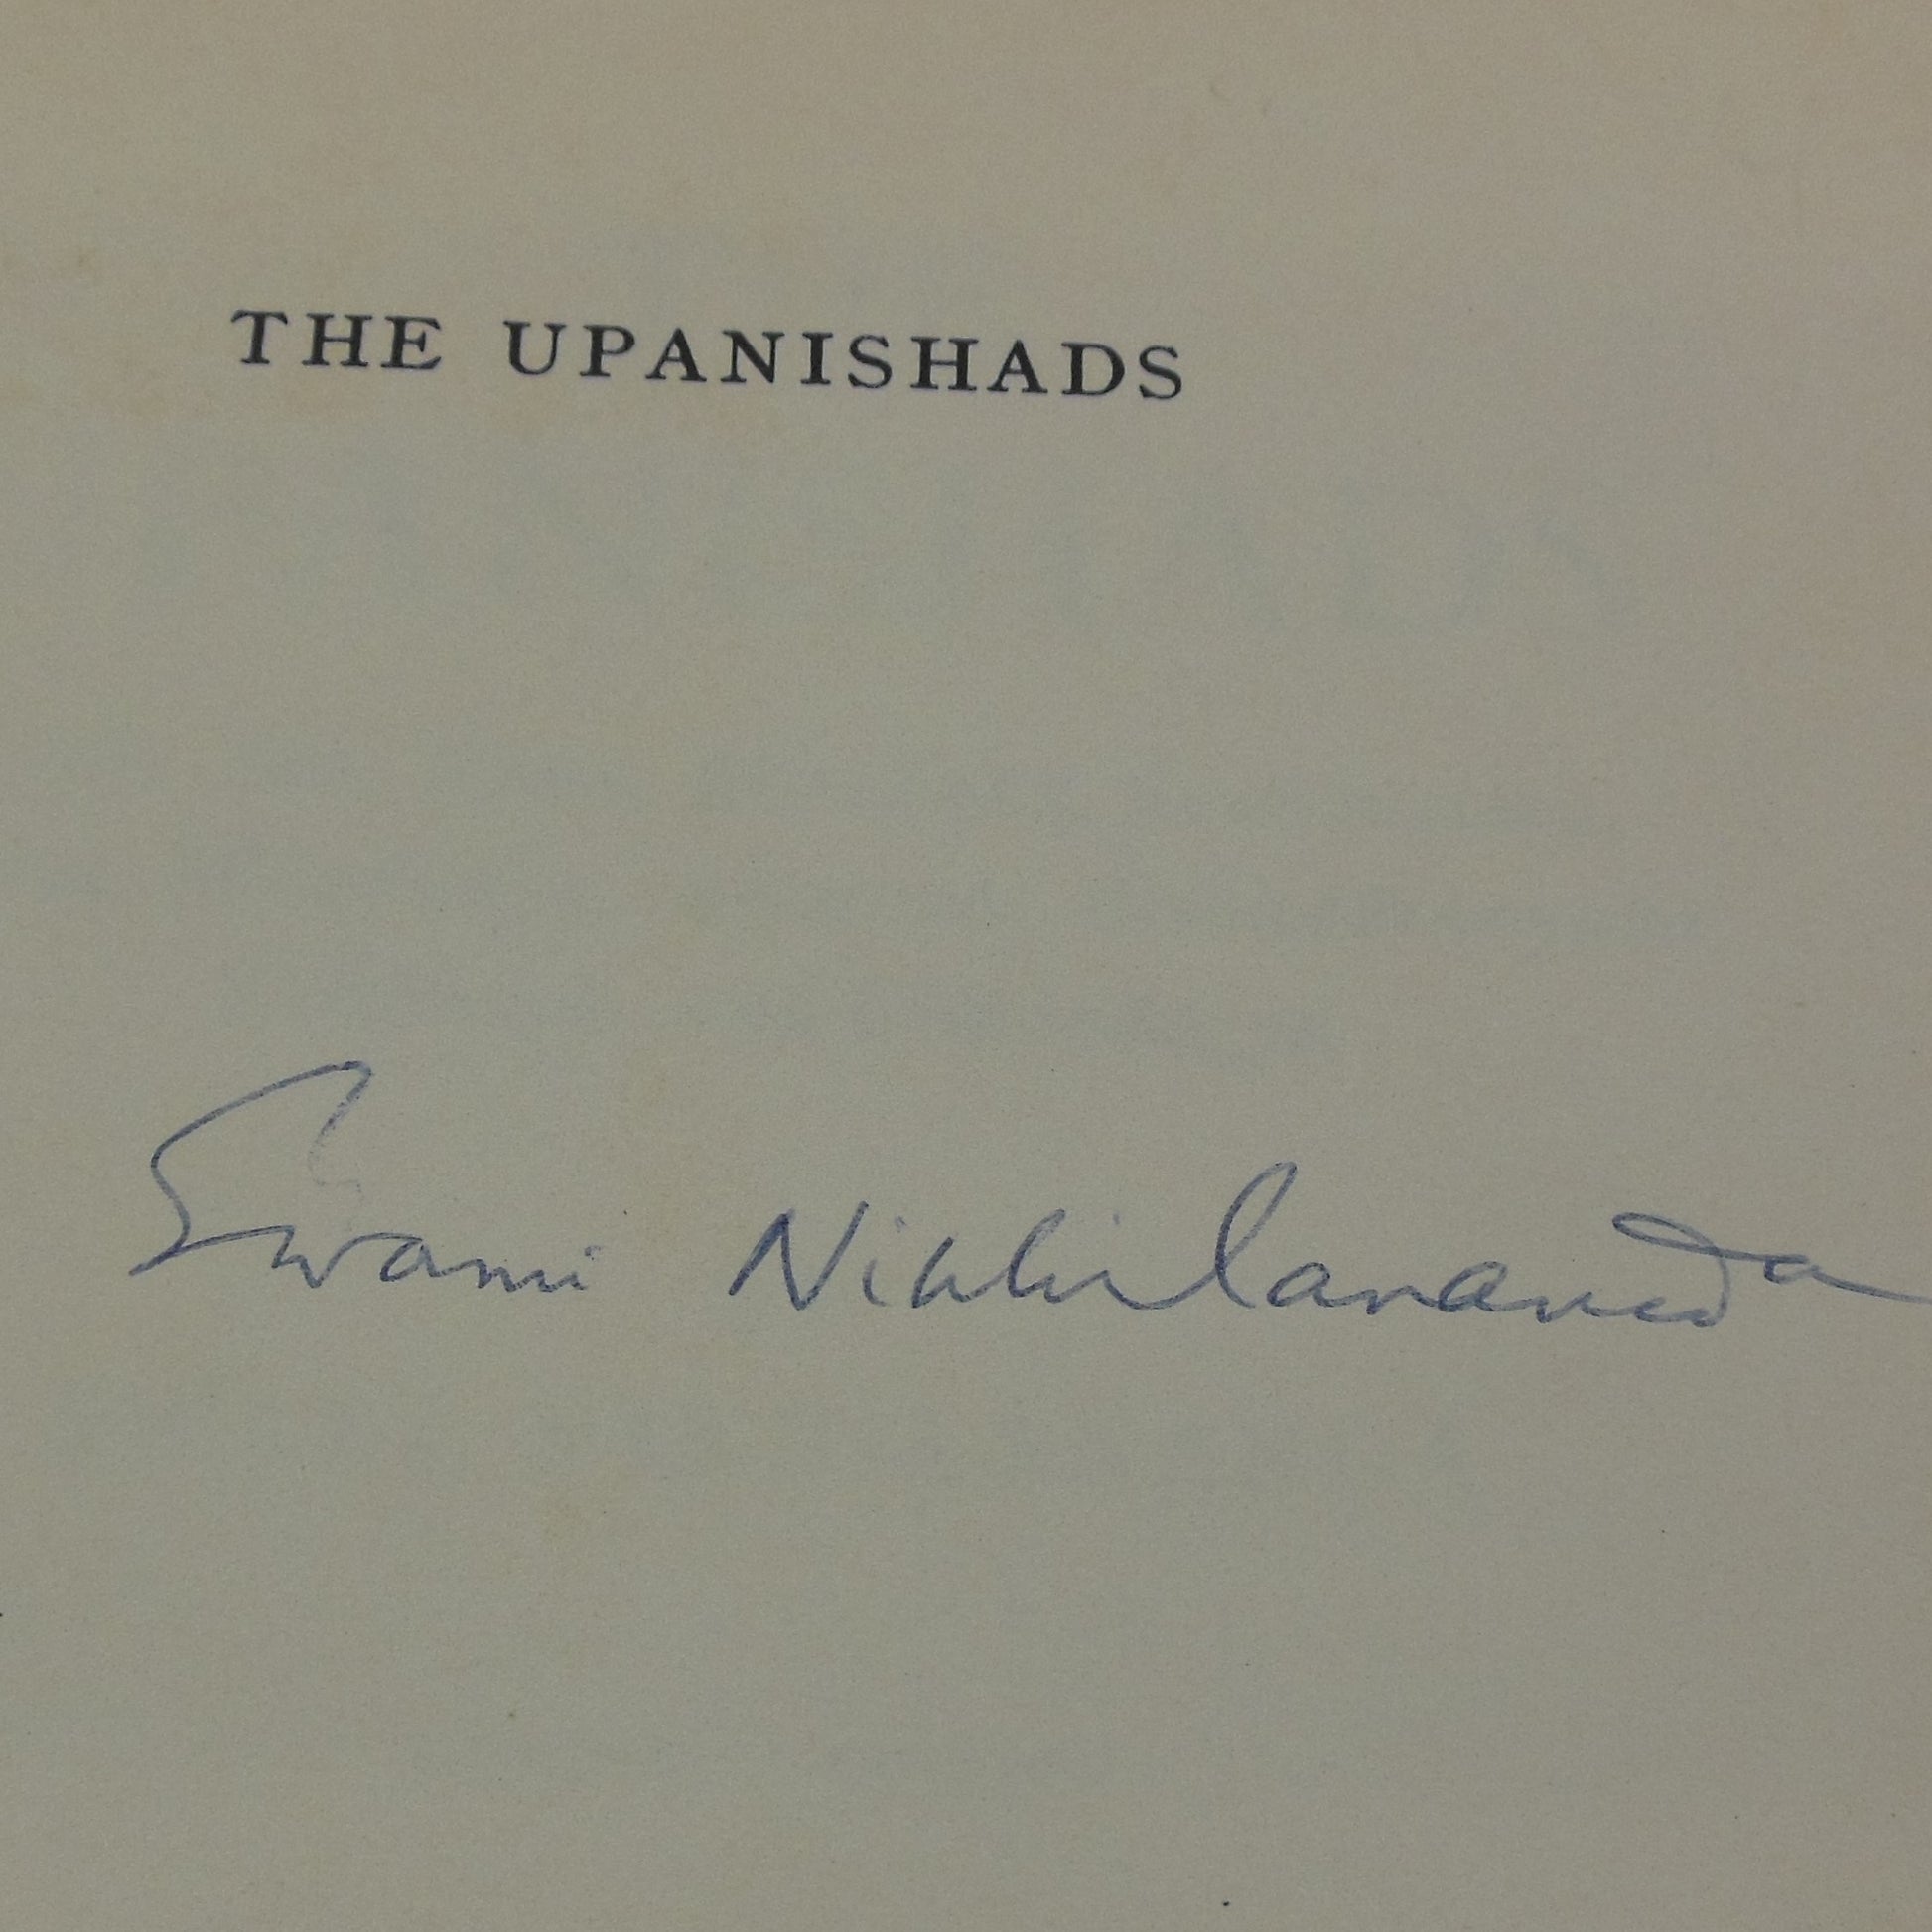 Swami Nikhilananda Signed Book - The Upanishads 1964 autograph